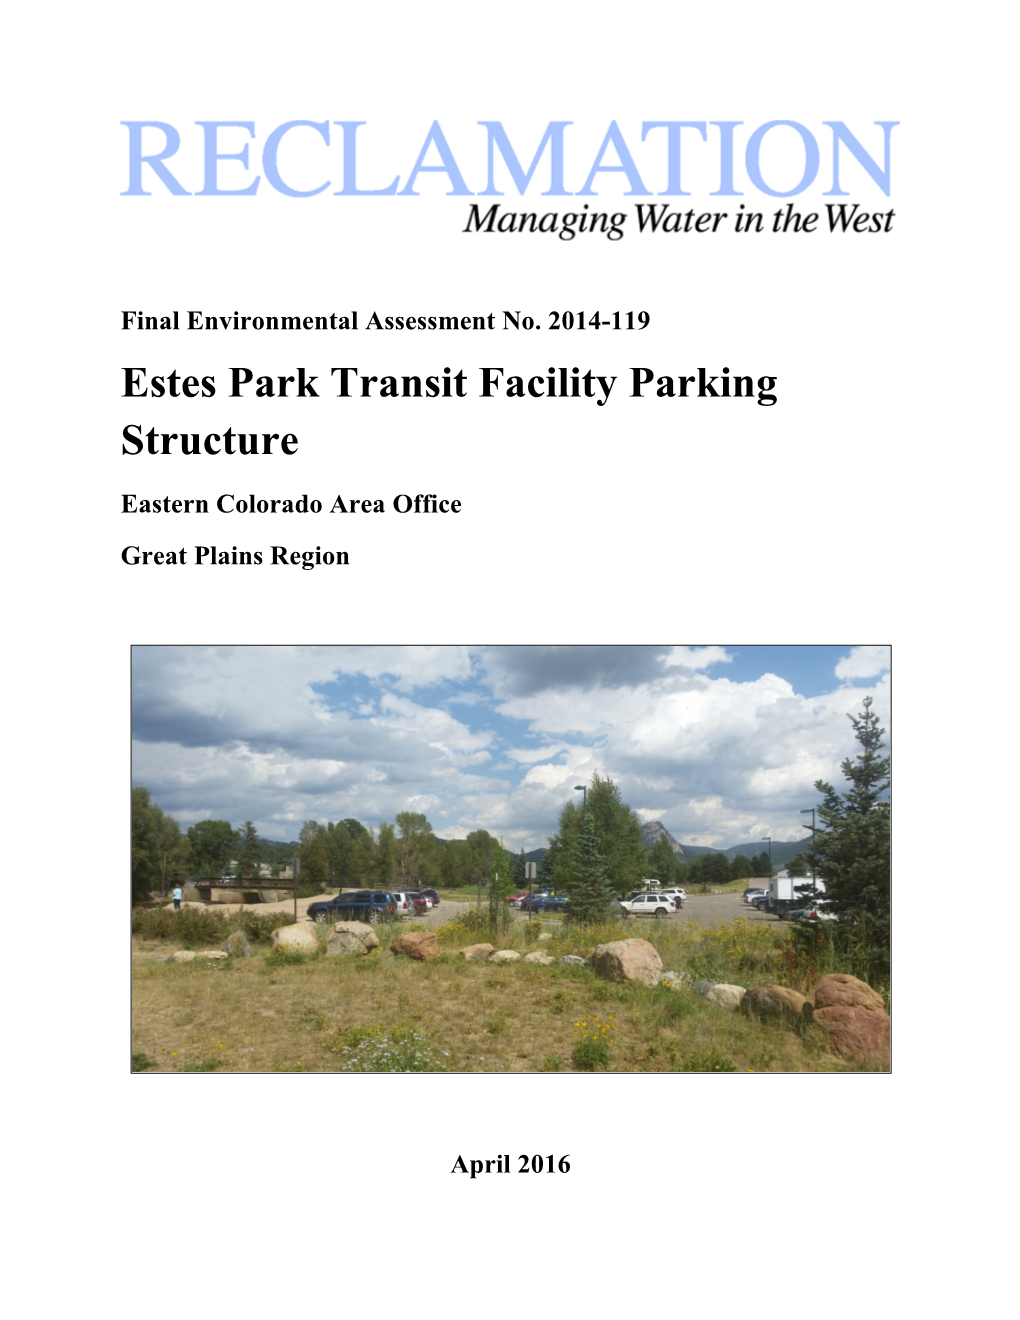 Estes Park Transit Parking Structure Final Environmental Assessment